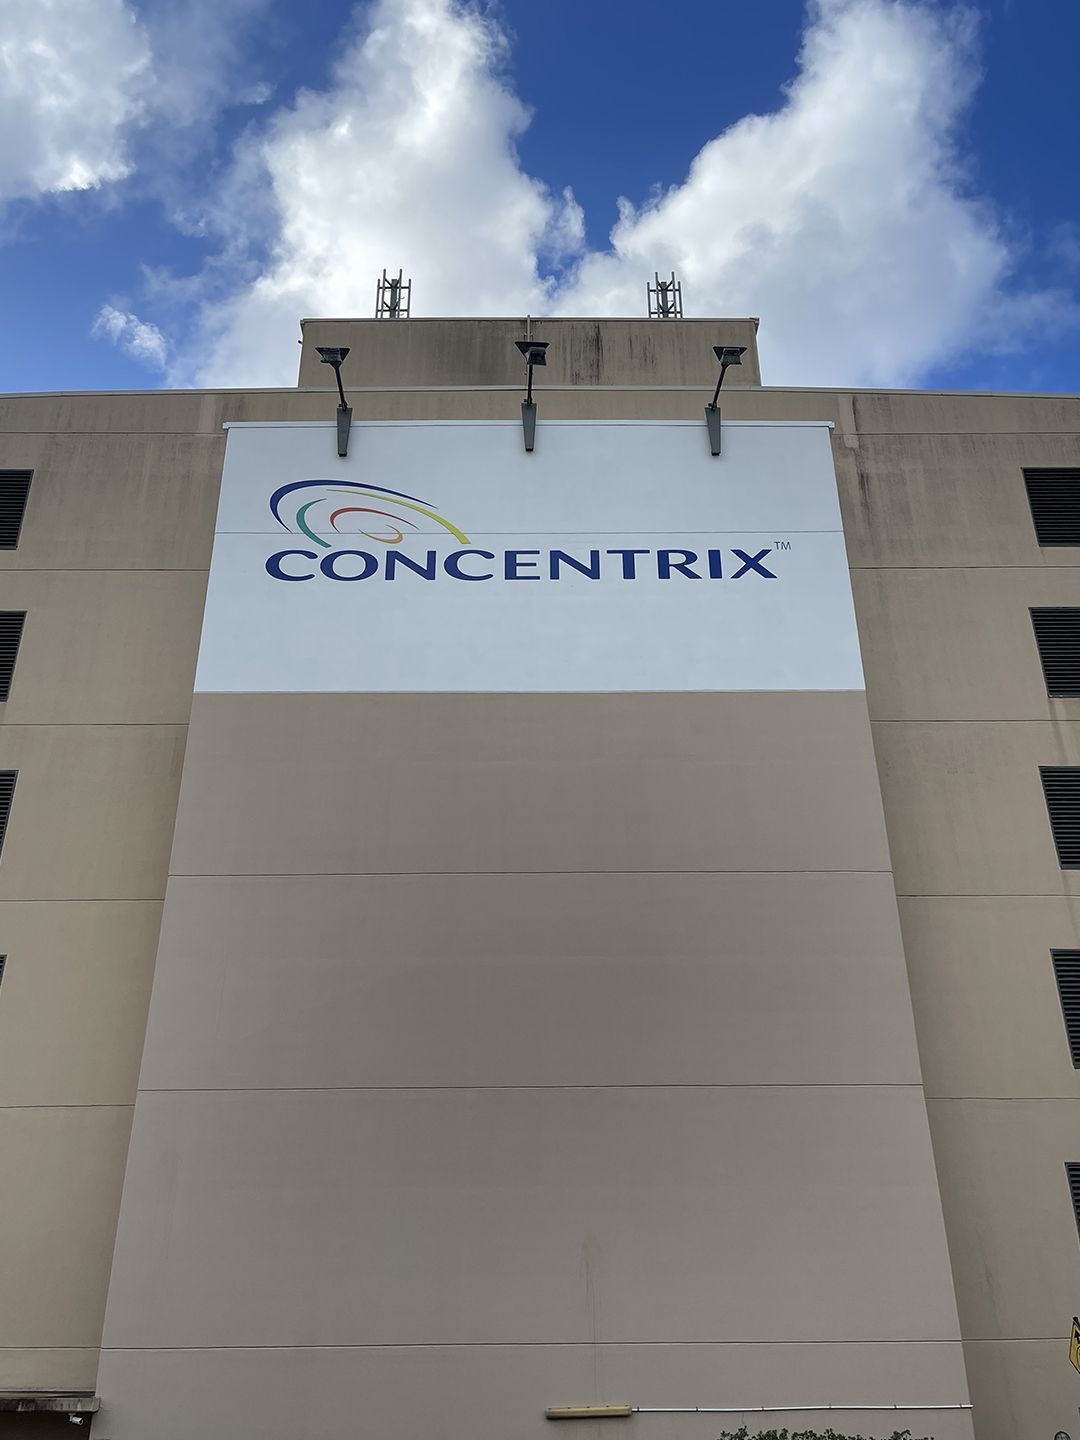 Concentrix Building Signage